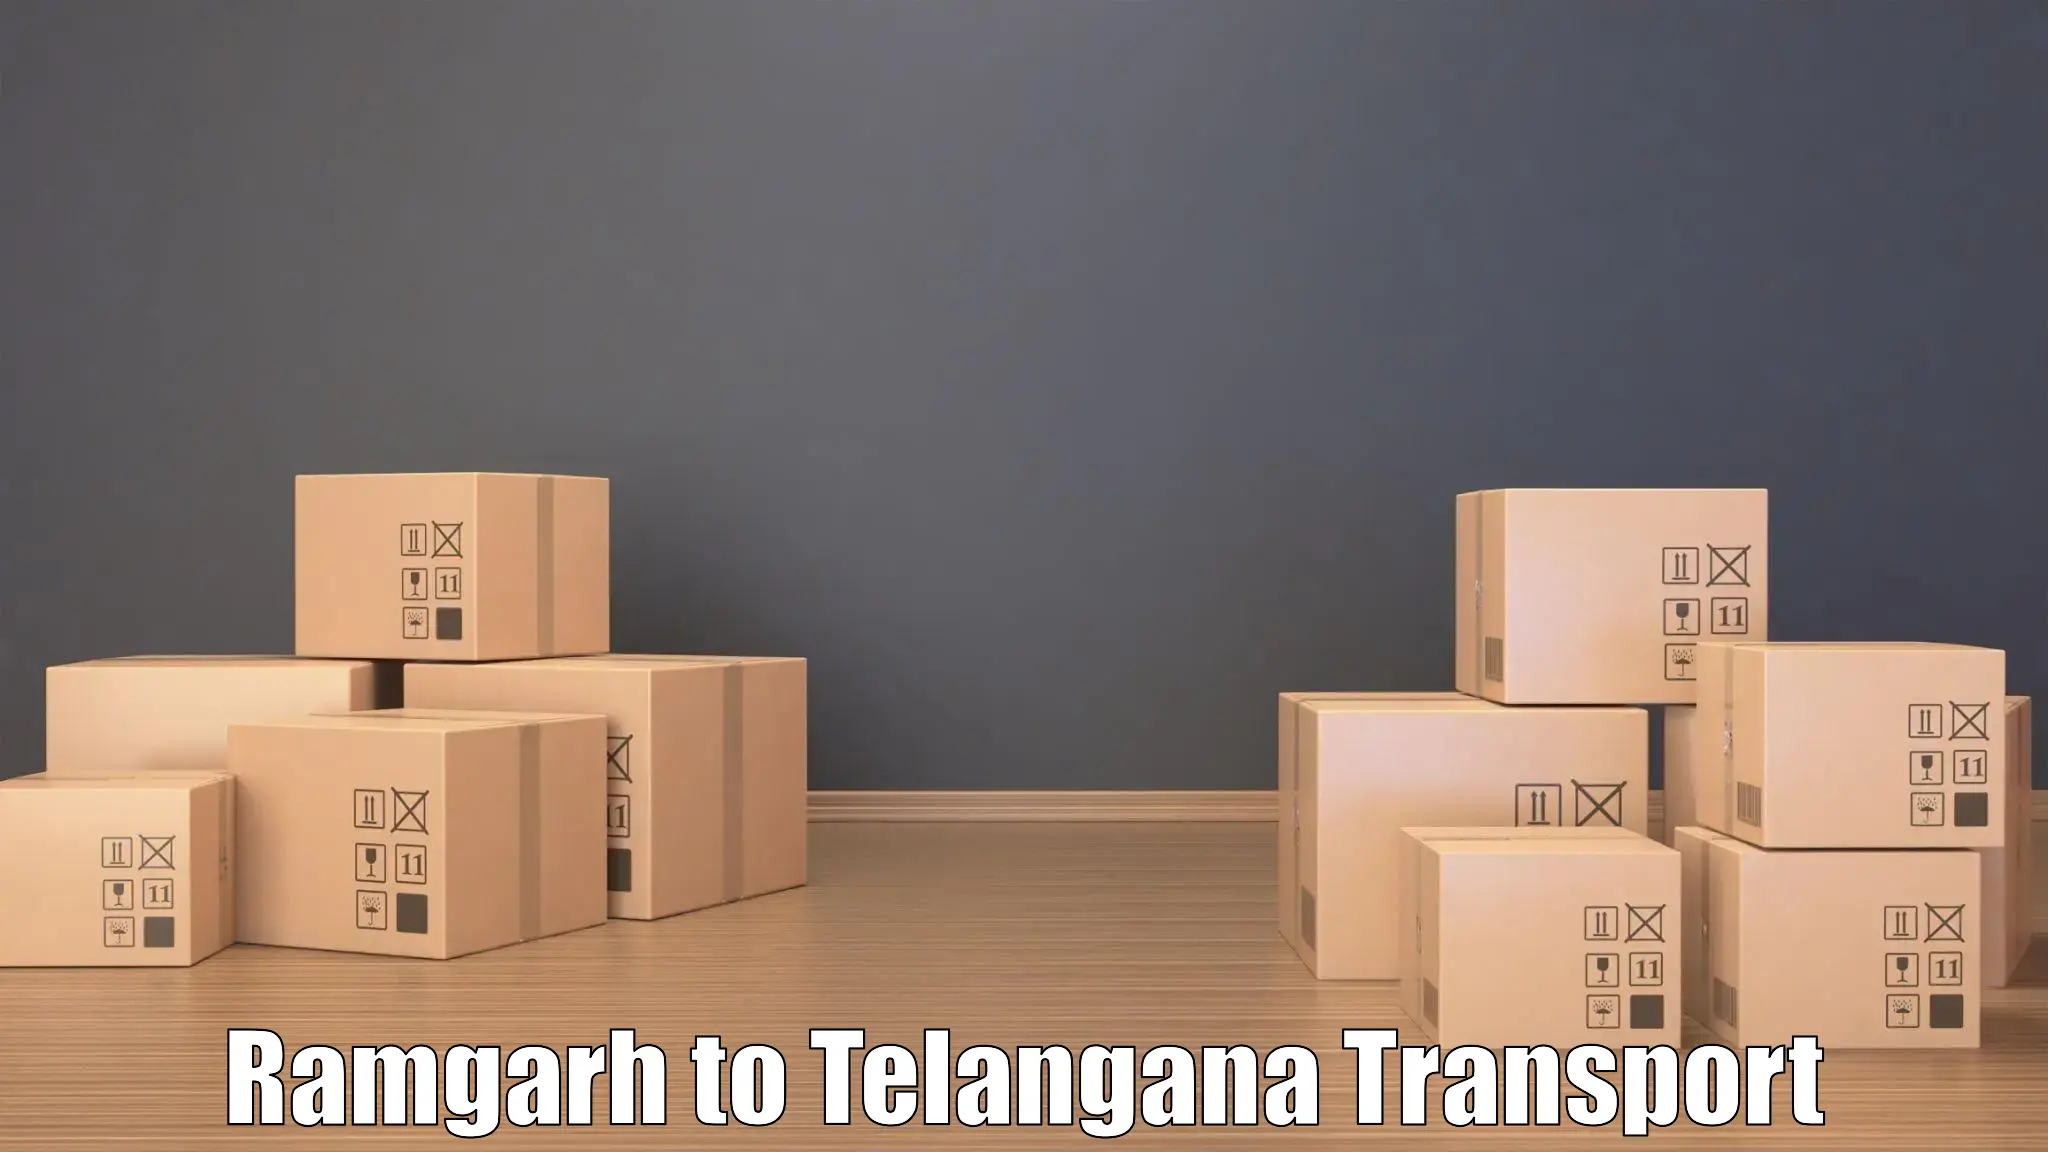 Land transport services Ramgarh to Tiryani